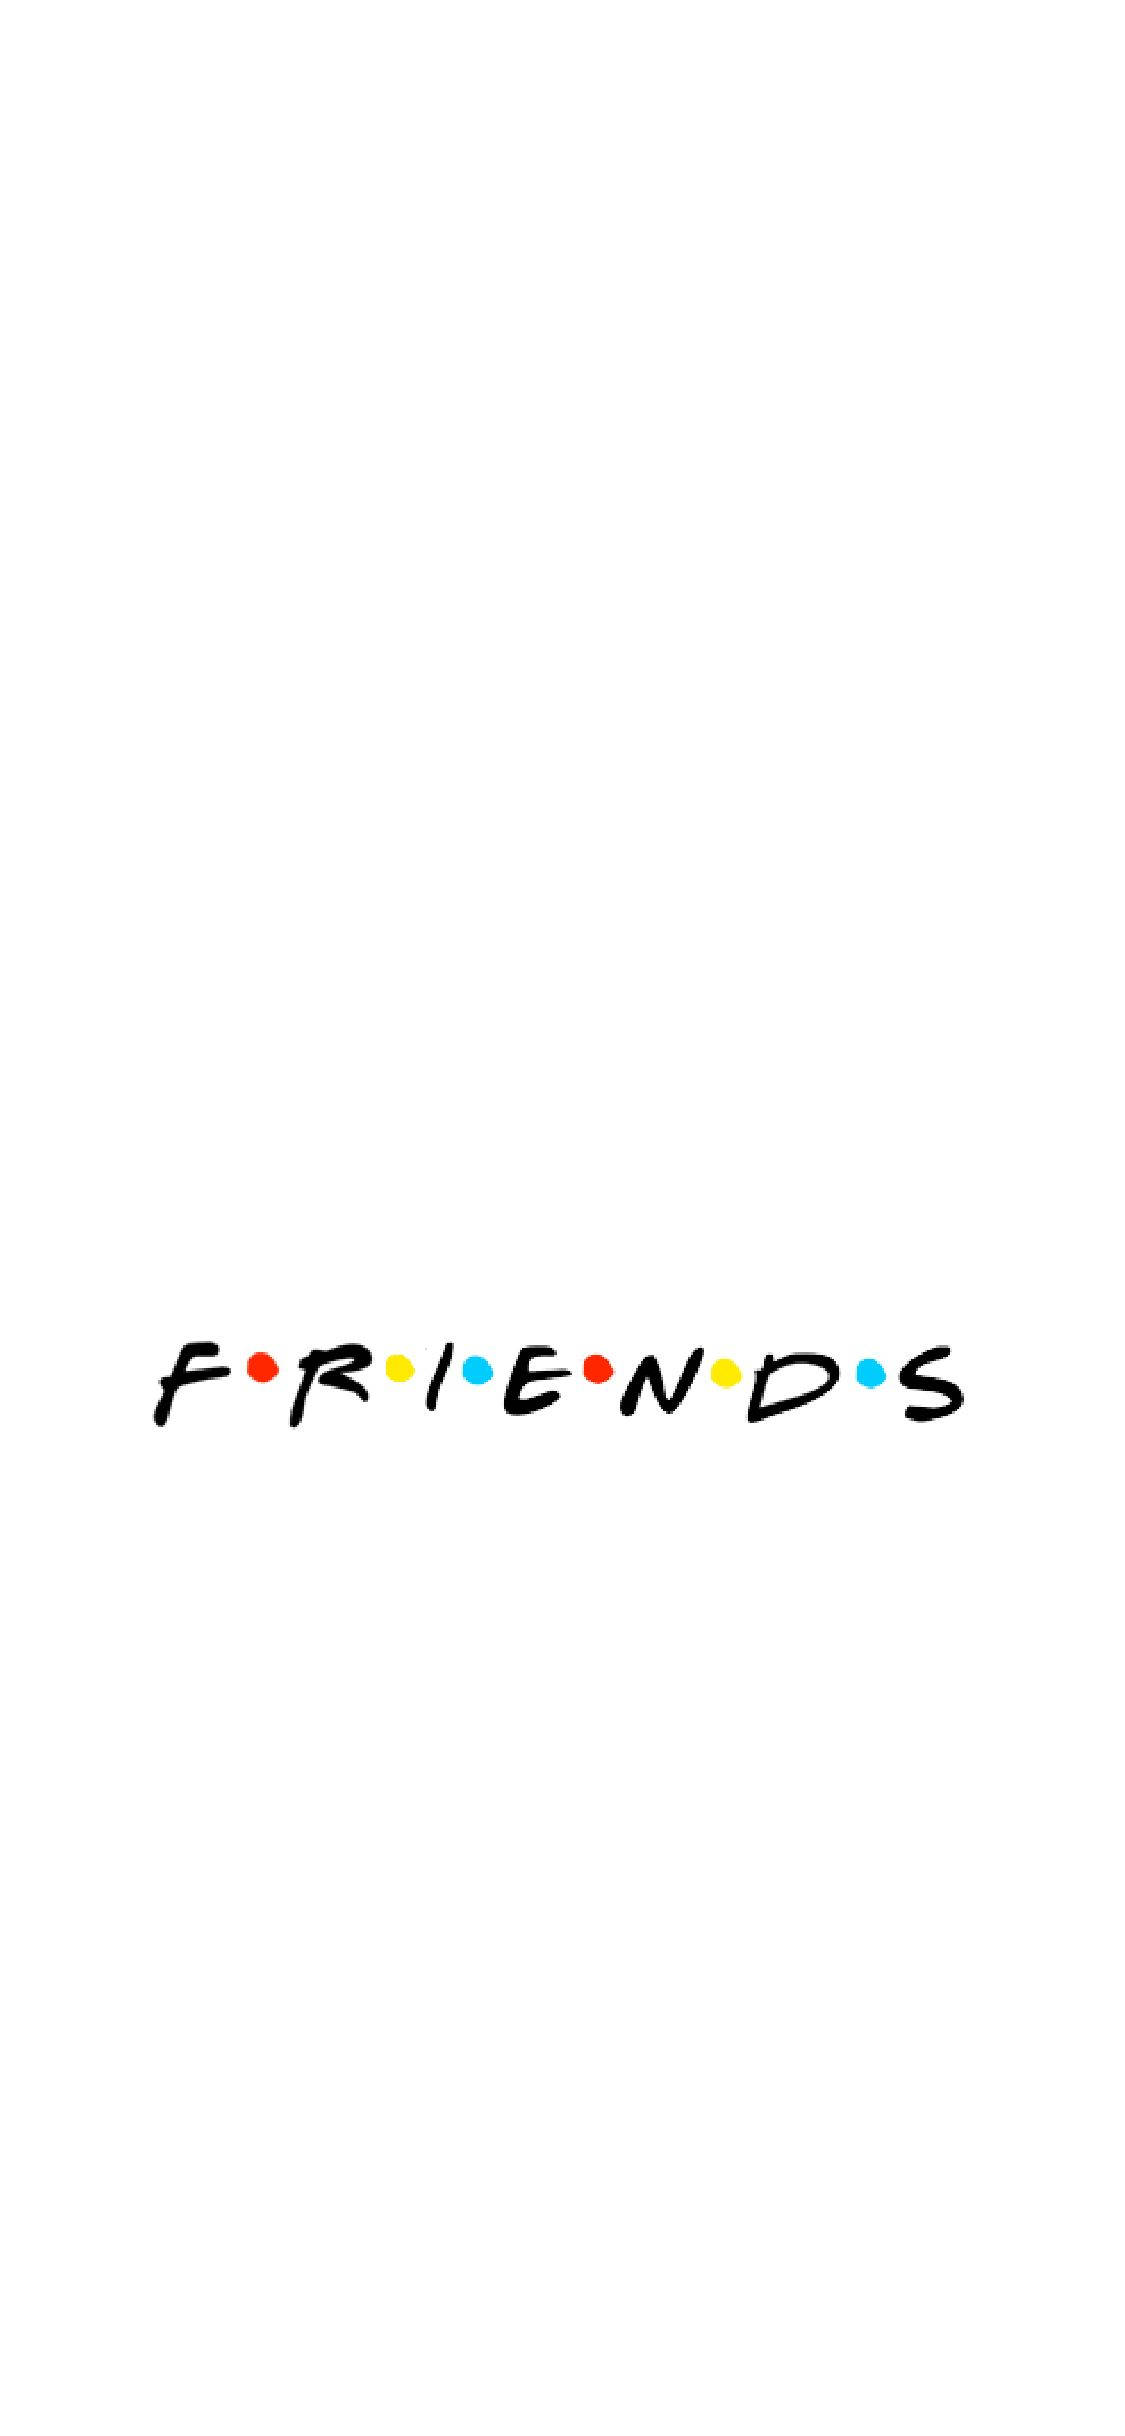 Minimalist Friends Logo Wallpaper